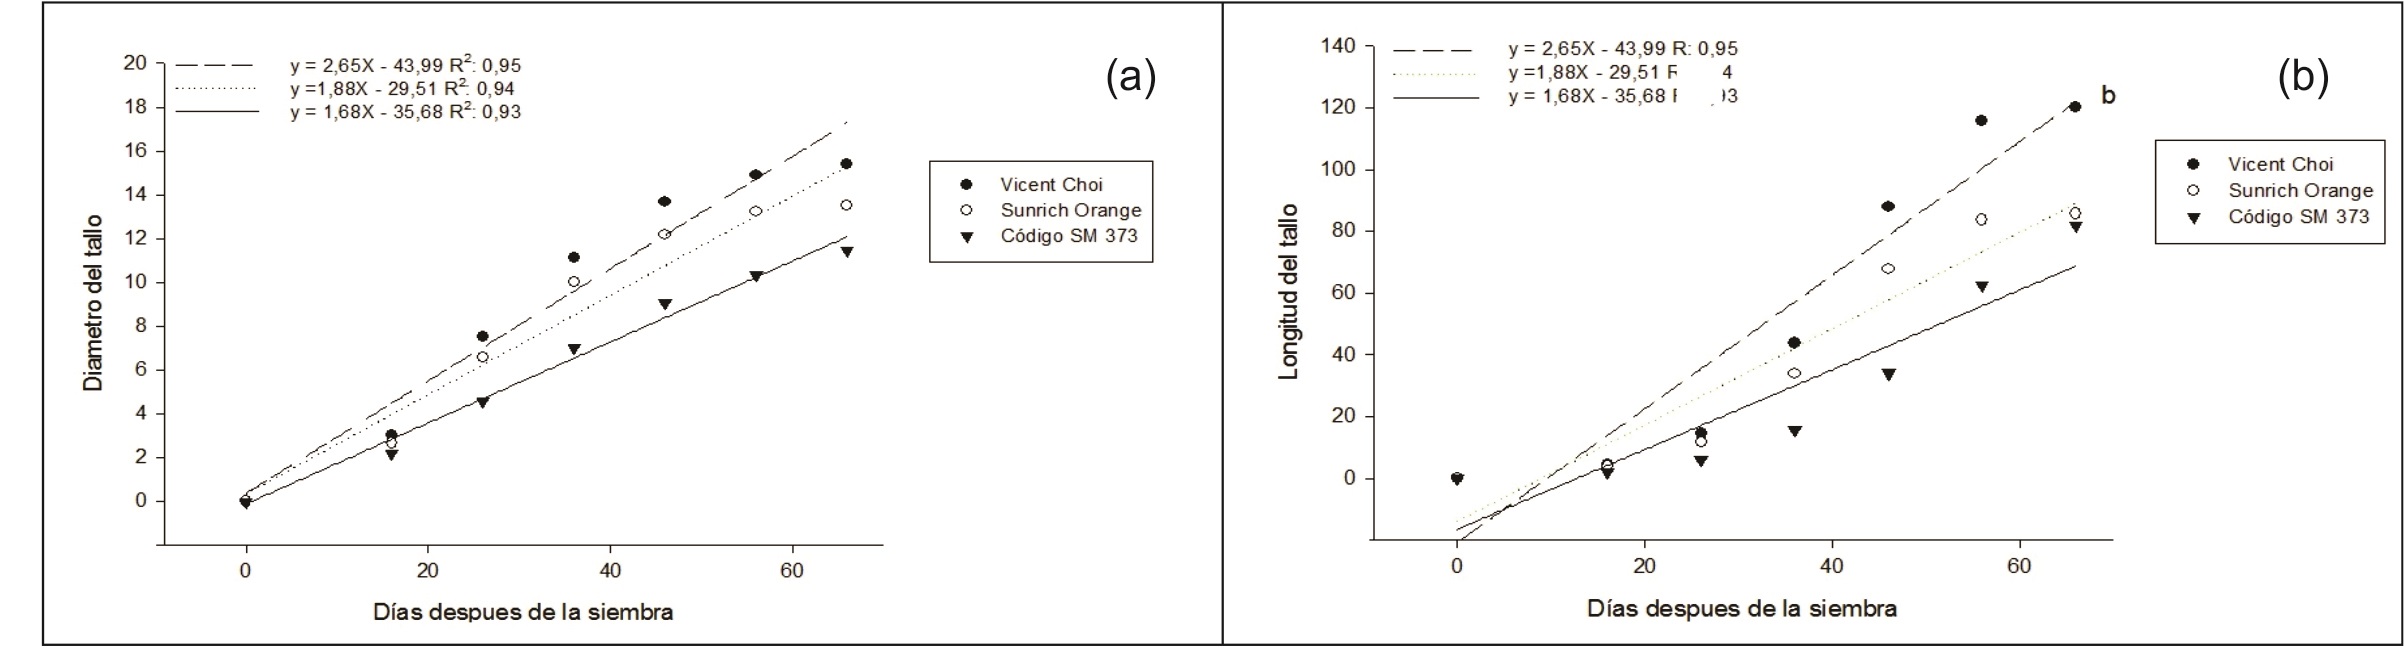 Diámetro (a) y longitud (b) de tallo de tres cultivares híbridos de girasol en función del ciclo del cultivo.